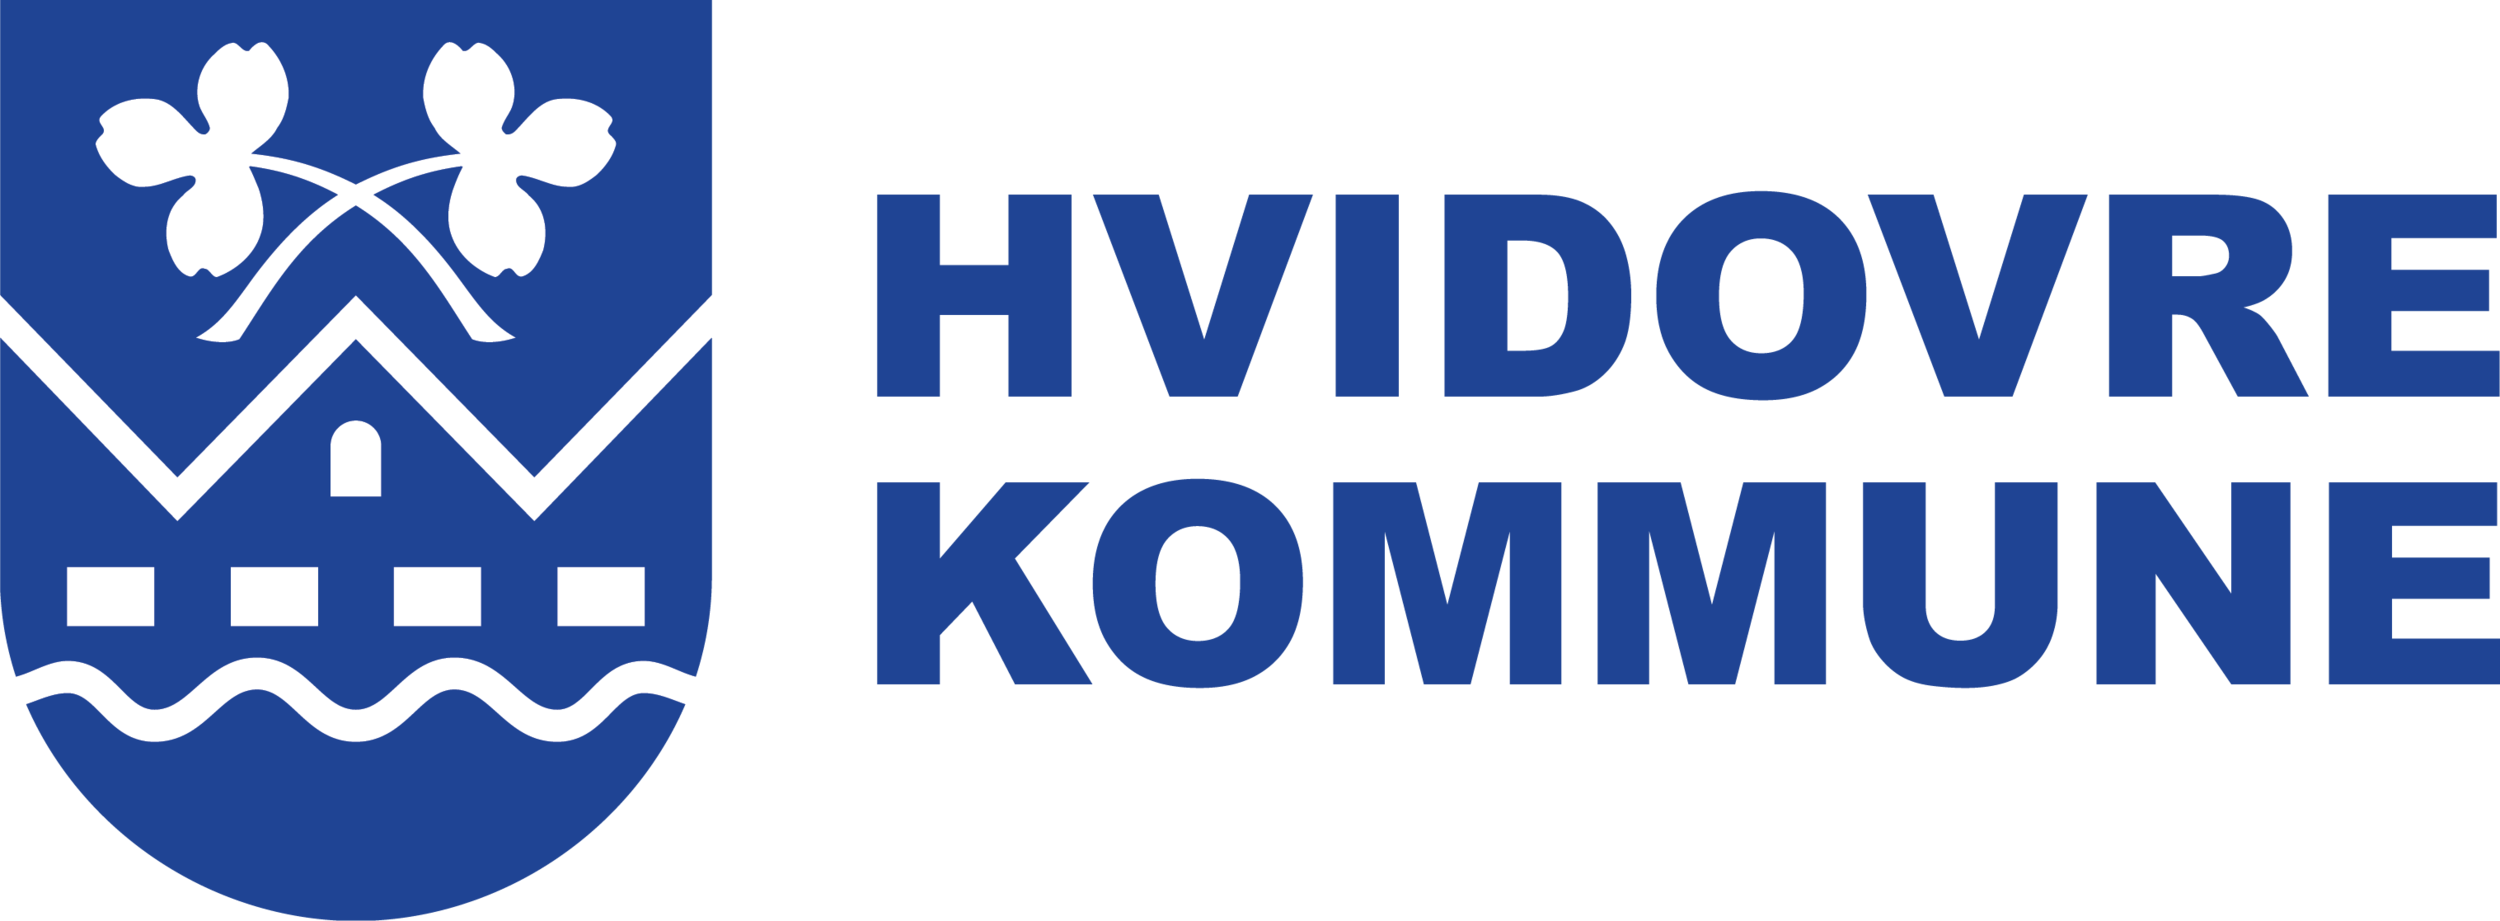 Hvidovre kommune_logo.png